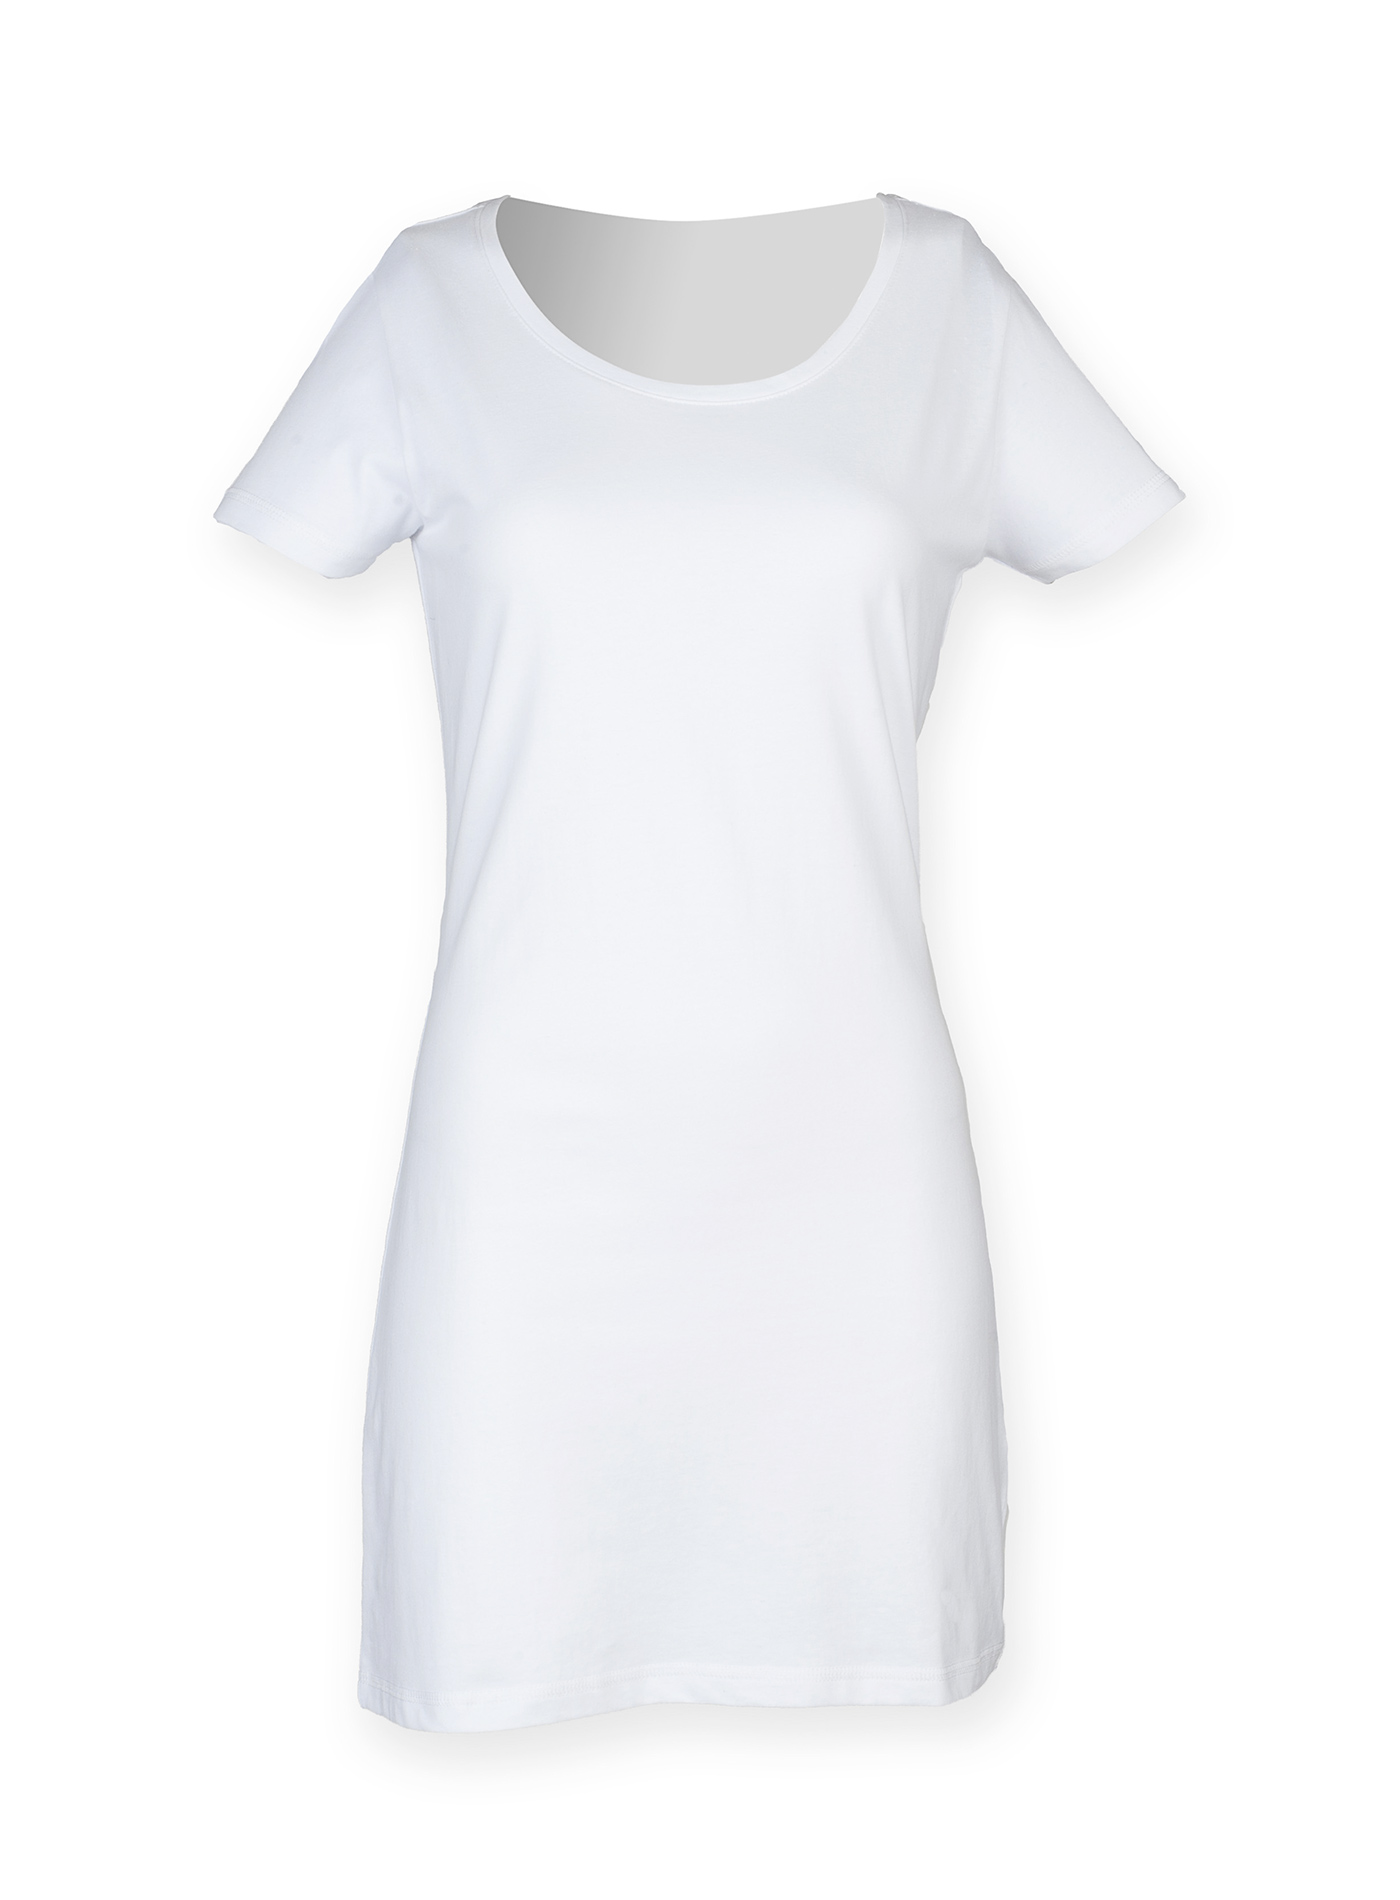 Dámské tričkové šaty - Bílá S